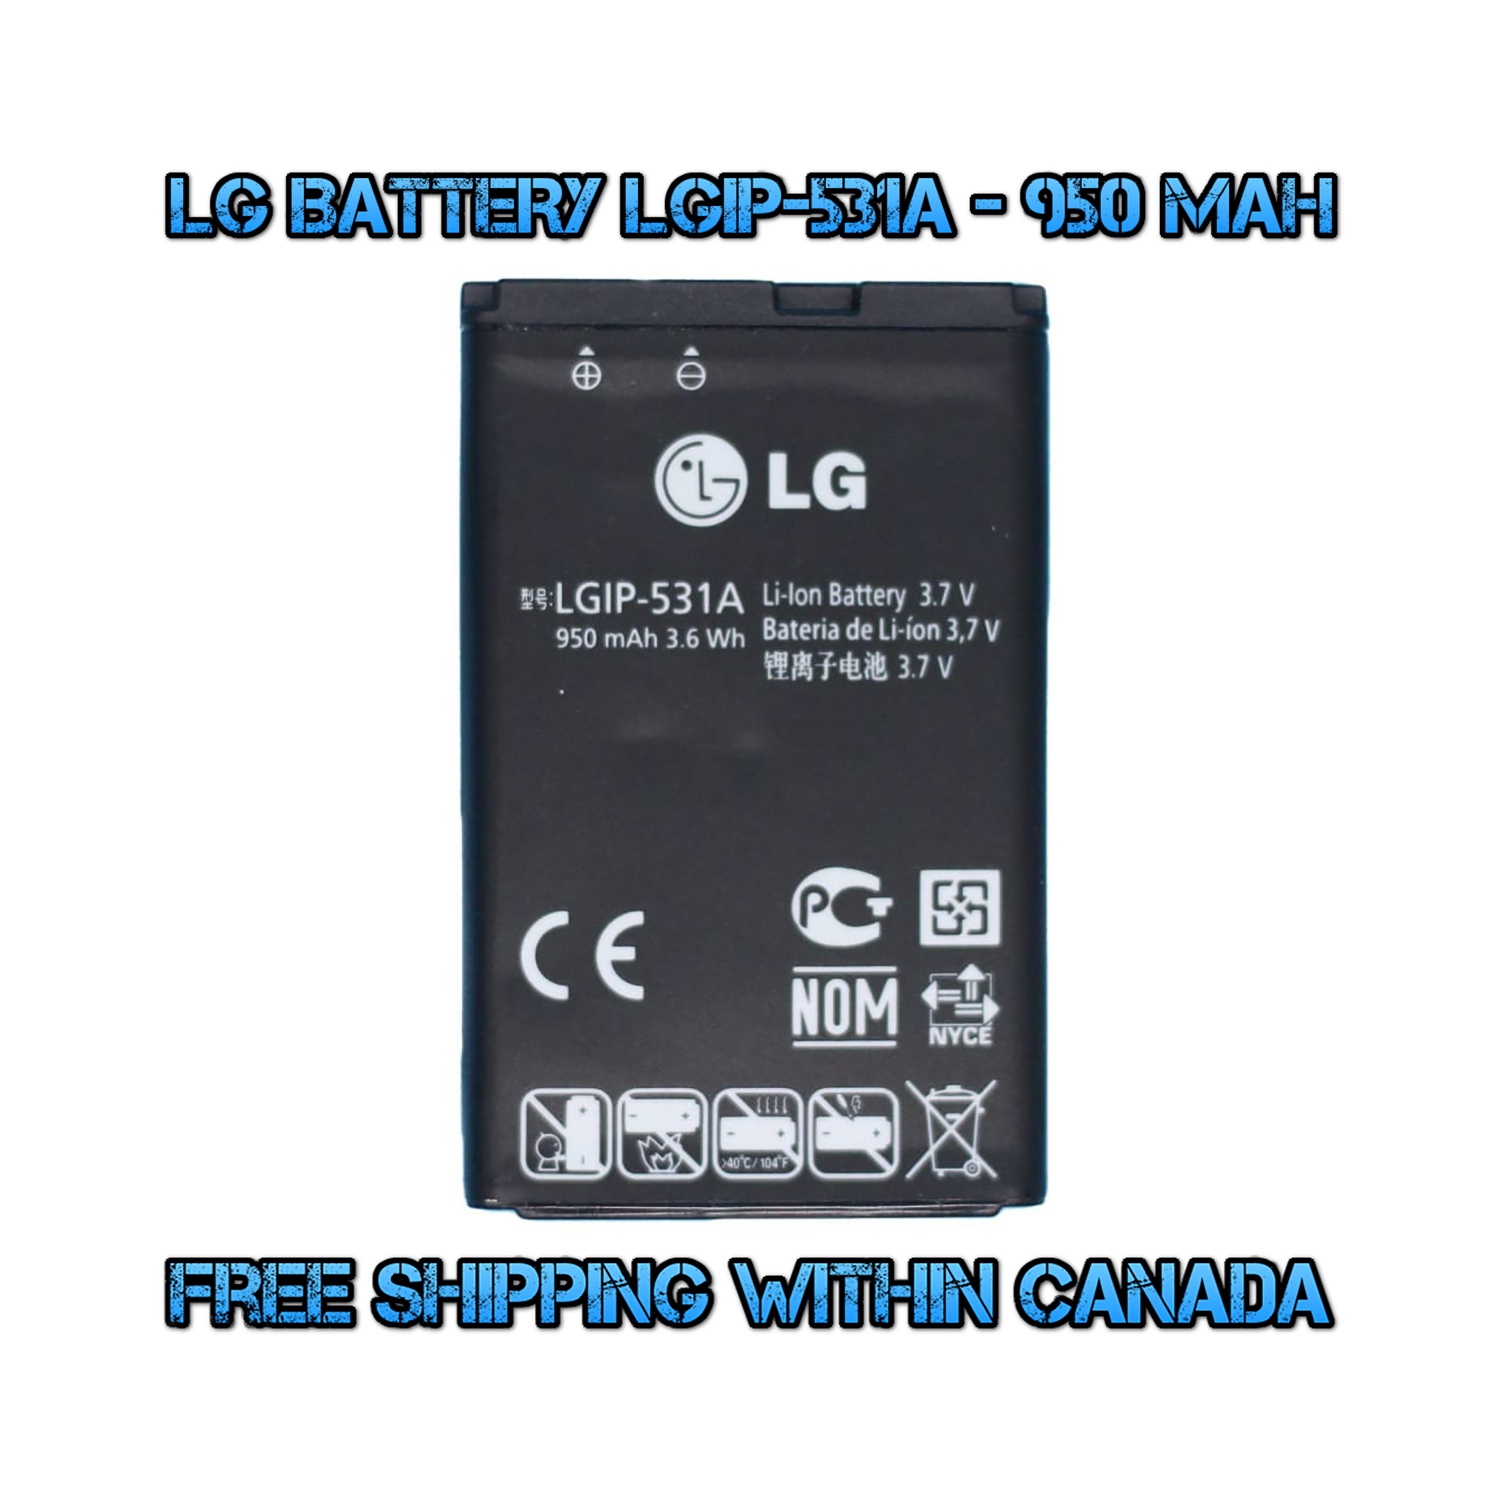 Original LG LGIP-531A 950 mAh Battery for KU250 KG280 KV230 KV380 UN170 UN200